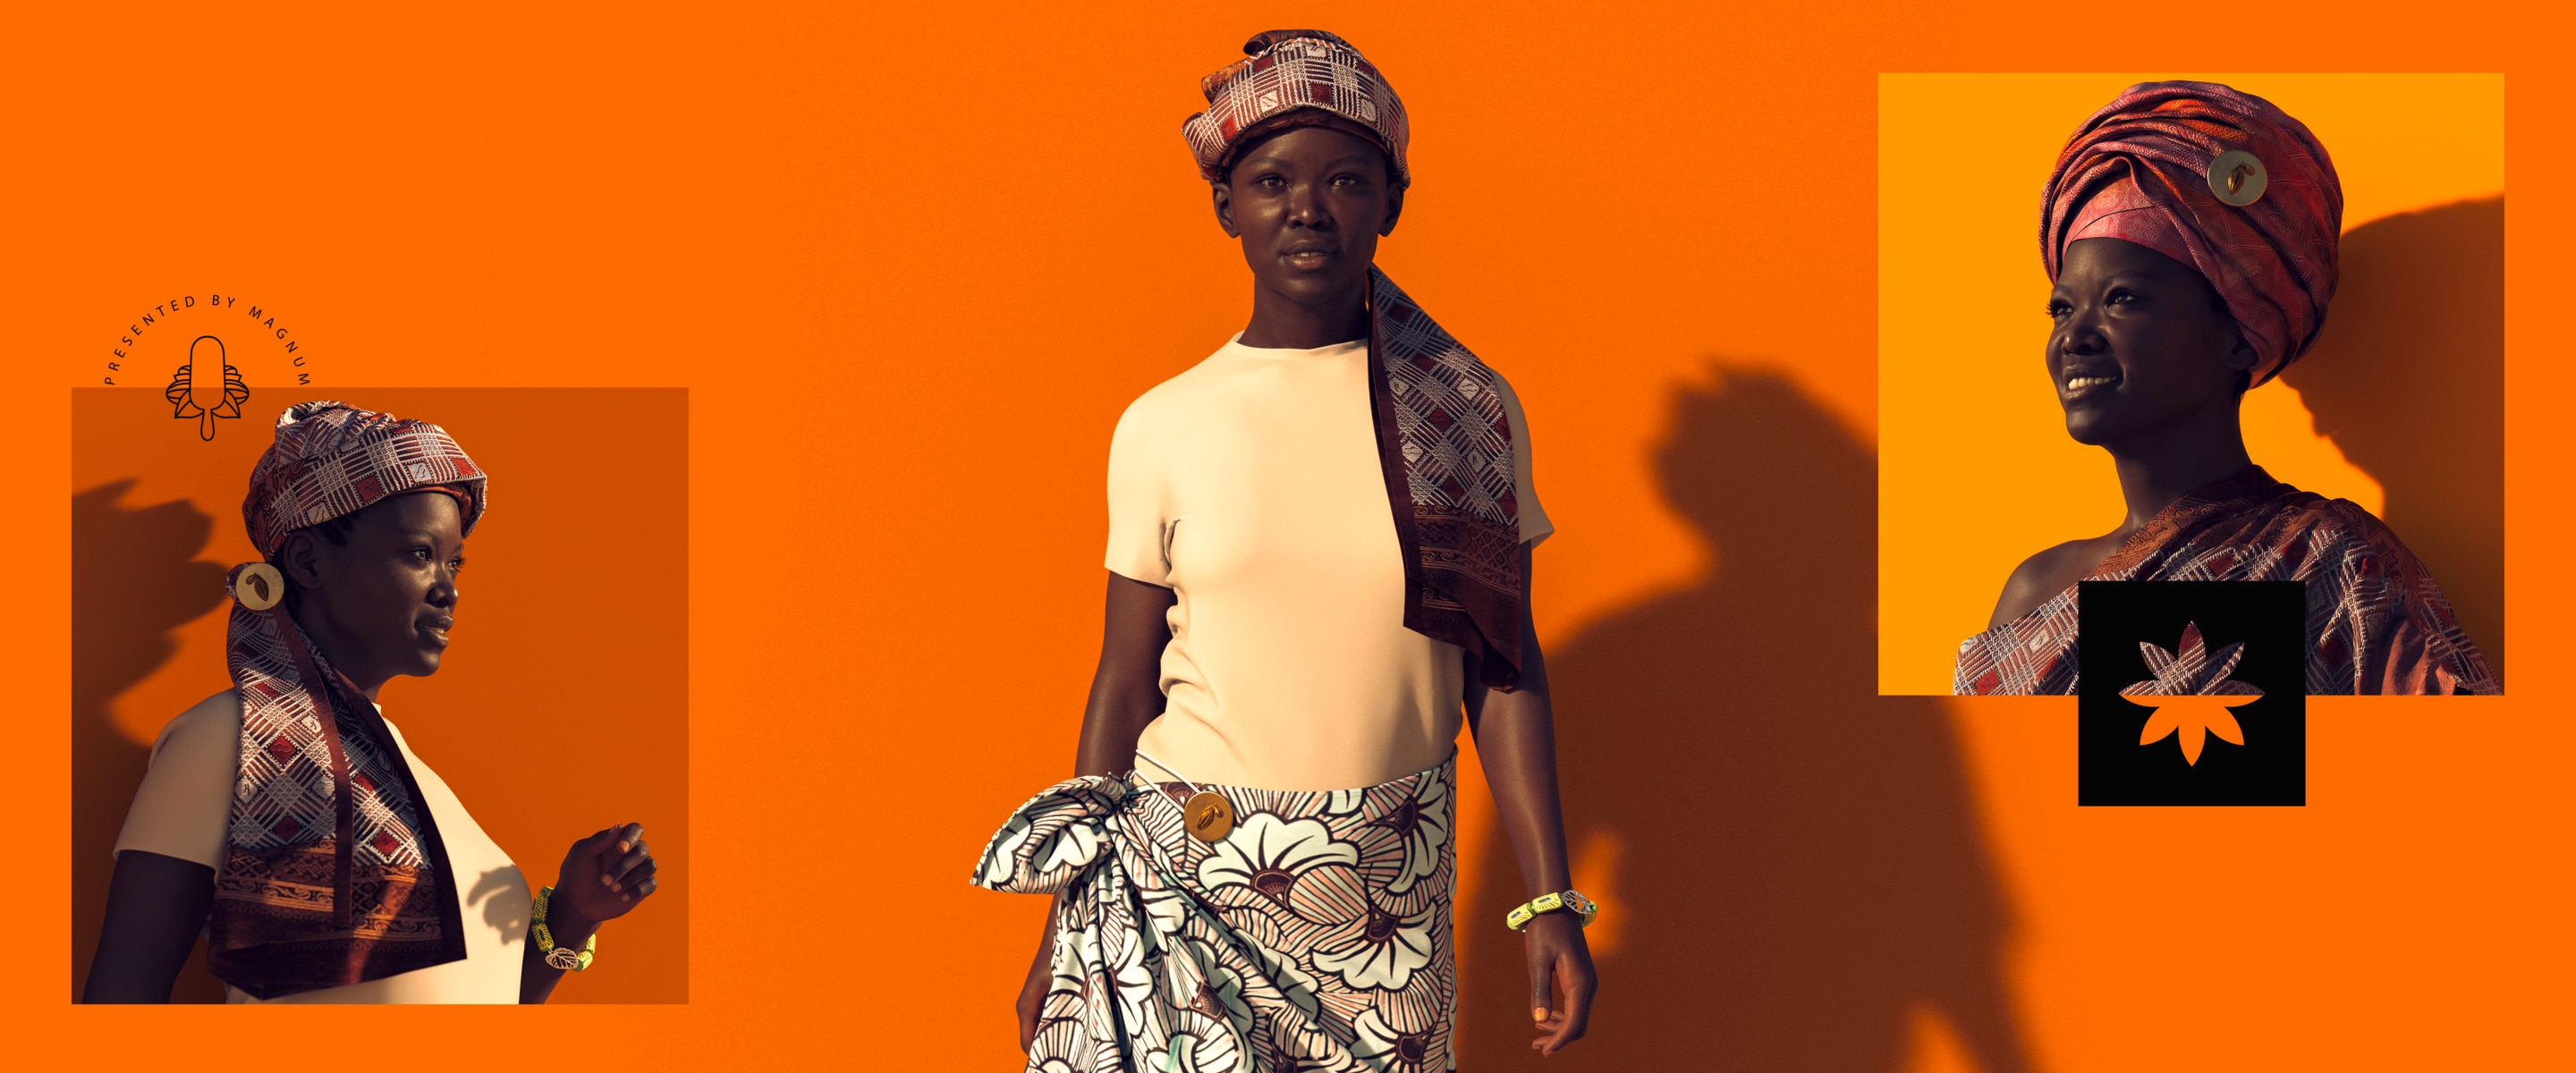 Fotomontage von einer afrikanischen Frau, die Modeartikel trägt